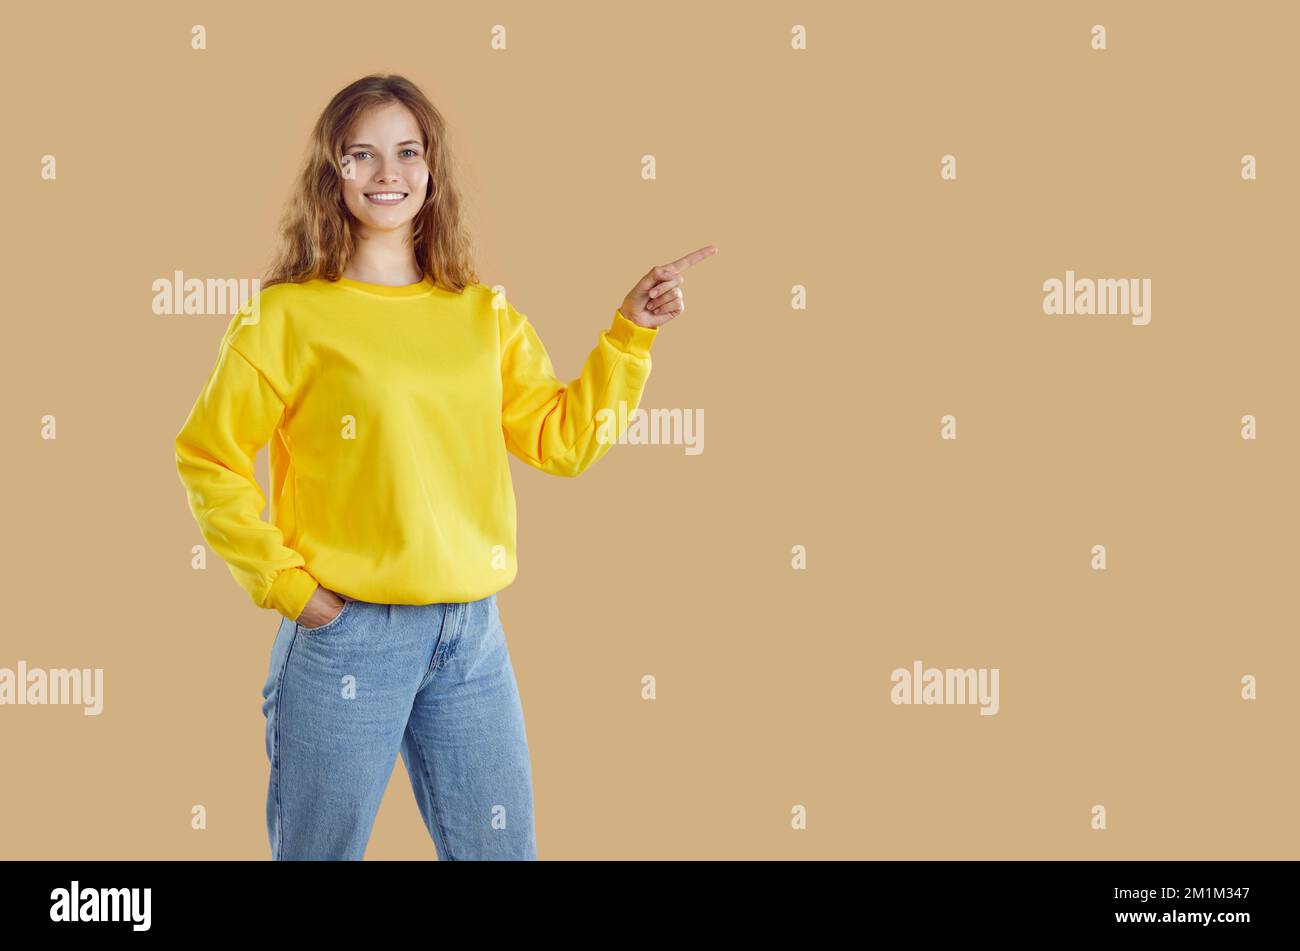 Sonriendo mujer joven casual en una sudadera amarilla se divierte